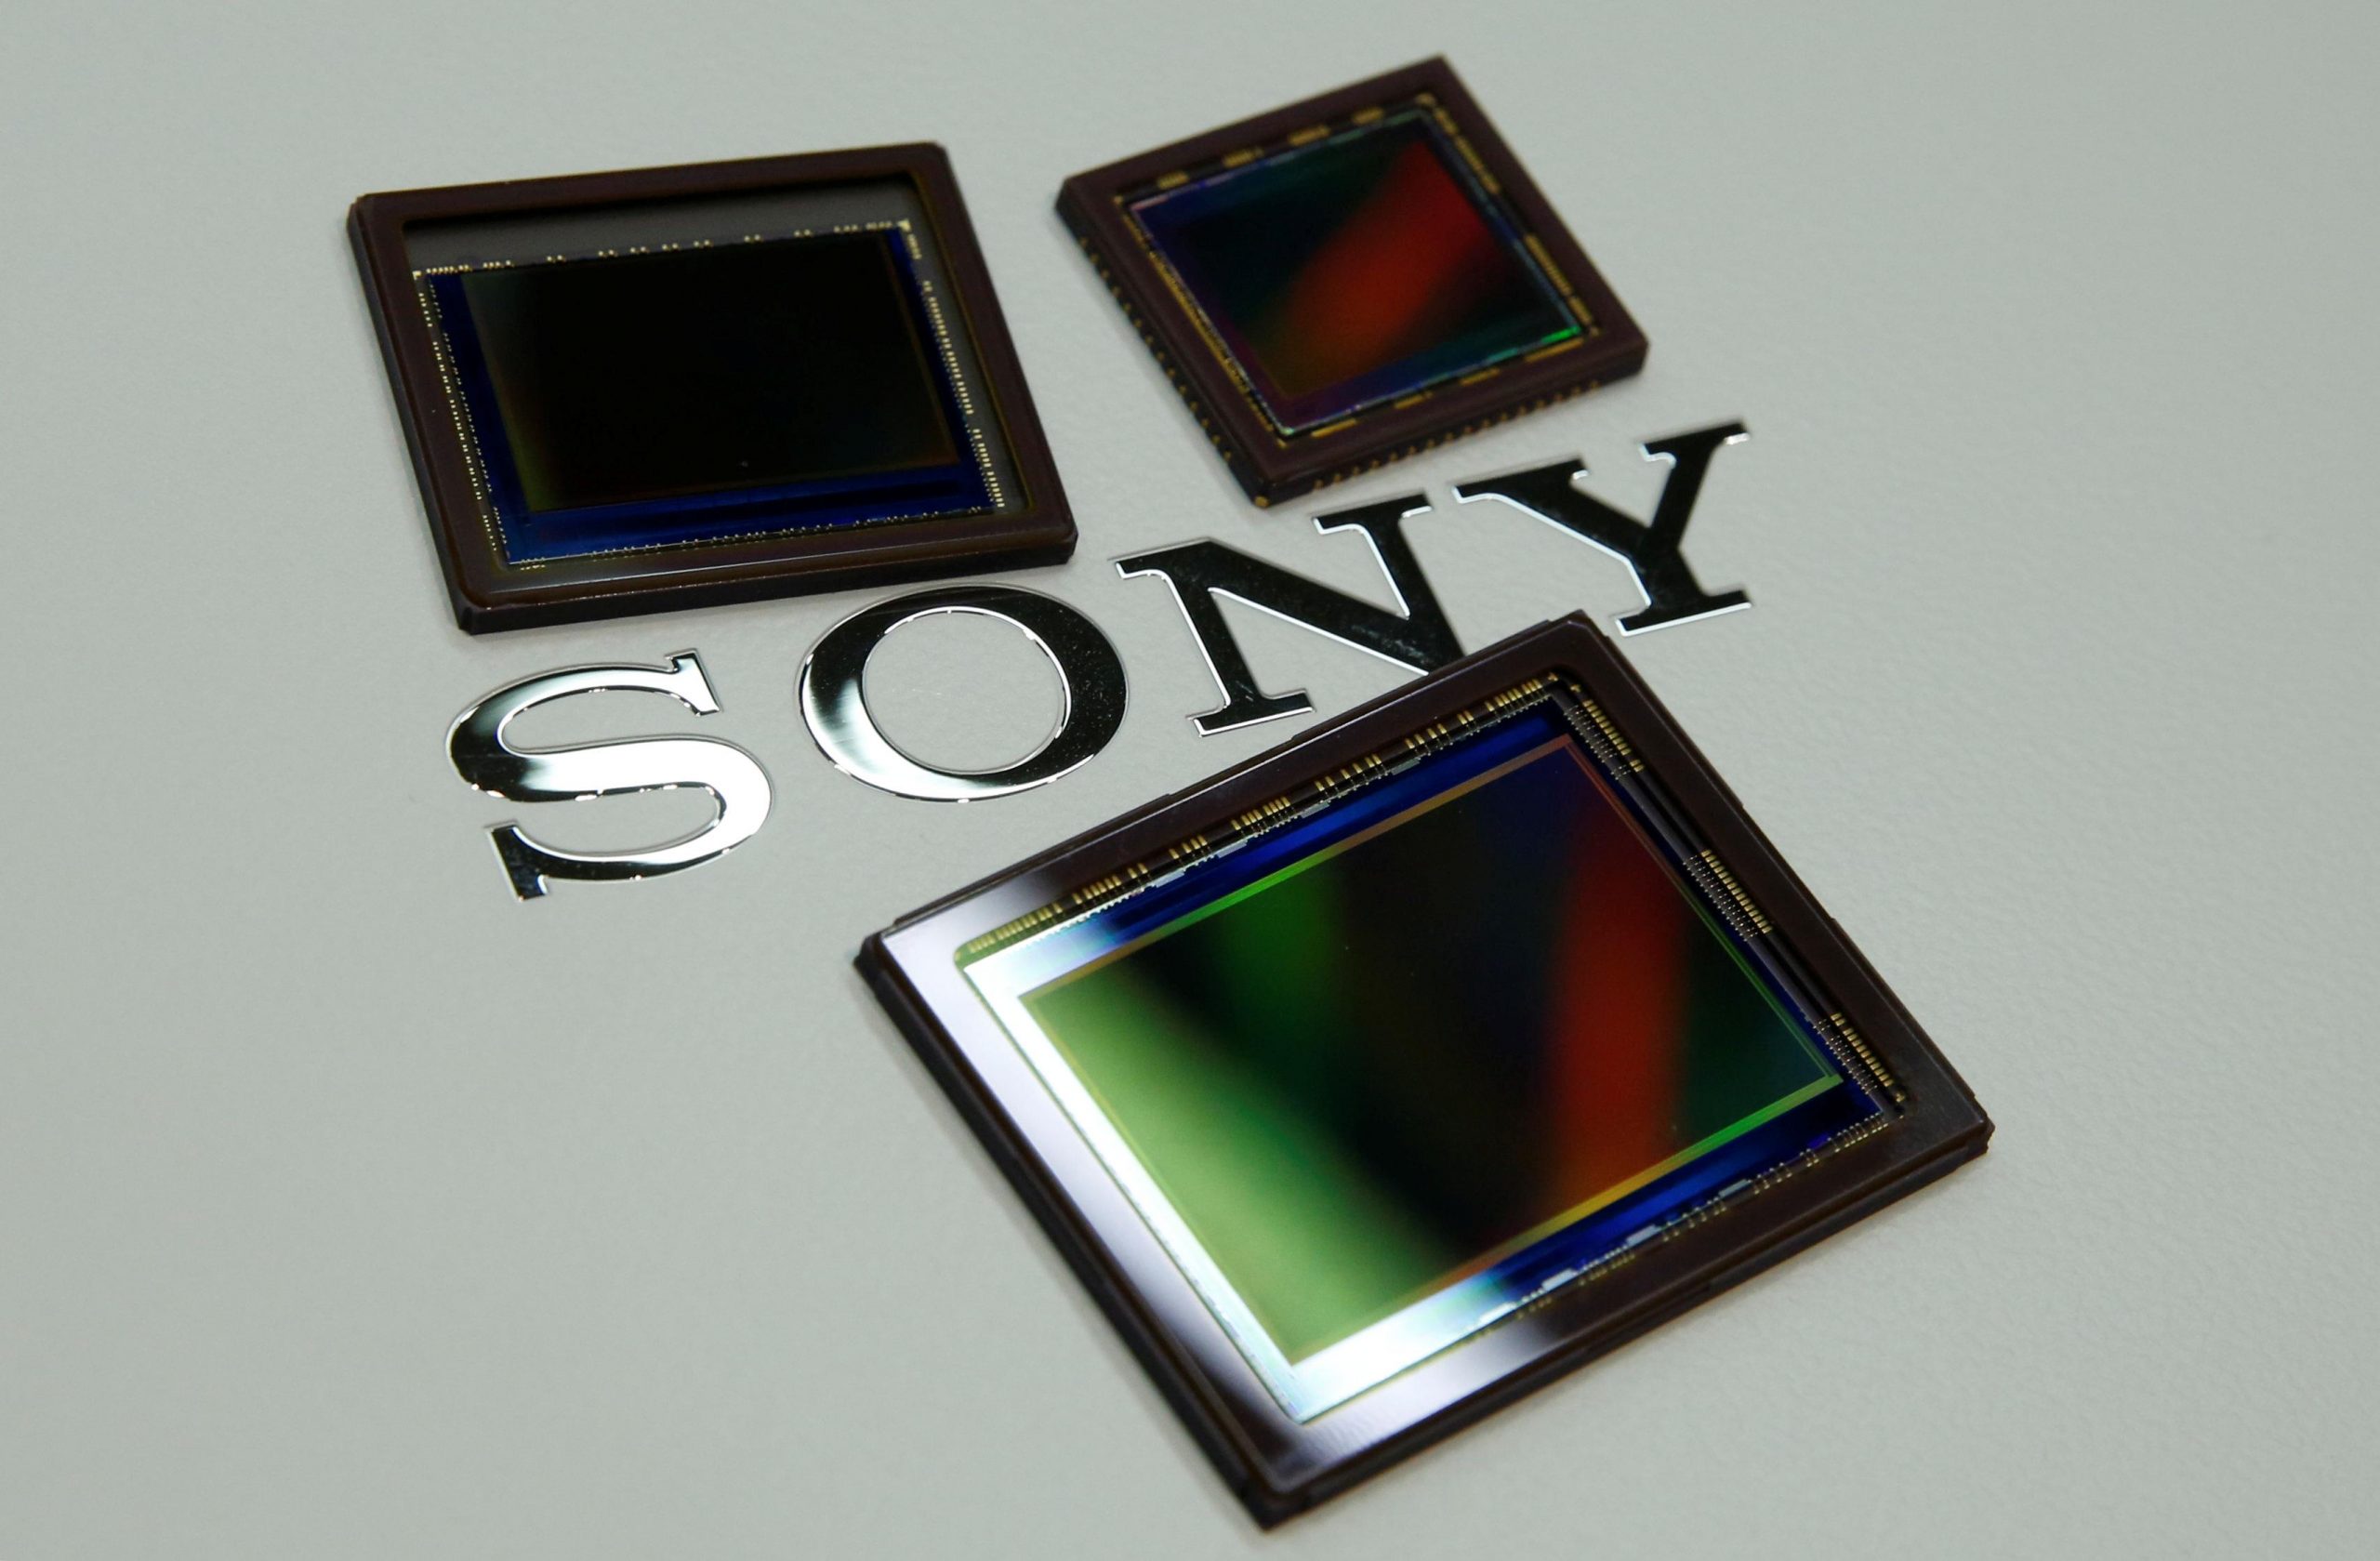 Mảng kinh doanh cảm biến ảnh của Sony đang thống lĩnh thị trường và các máy ảnh từ hãng có thể hưởng lợi từ điều này